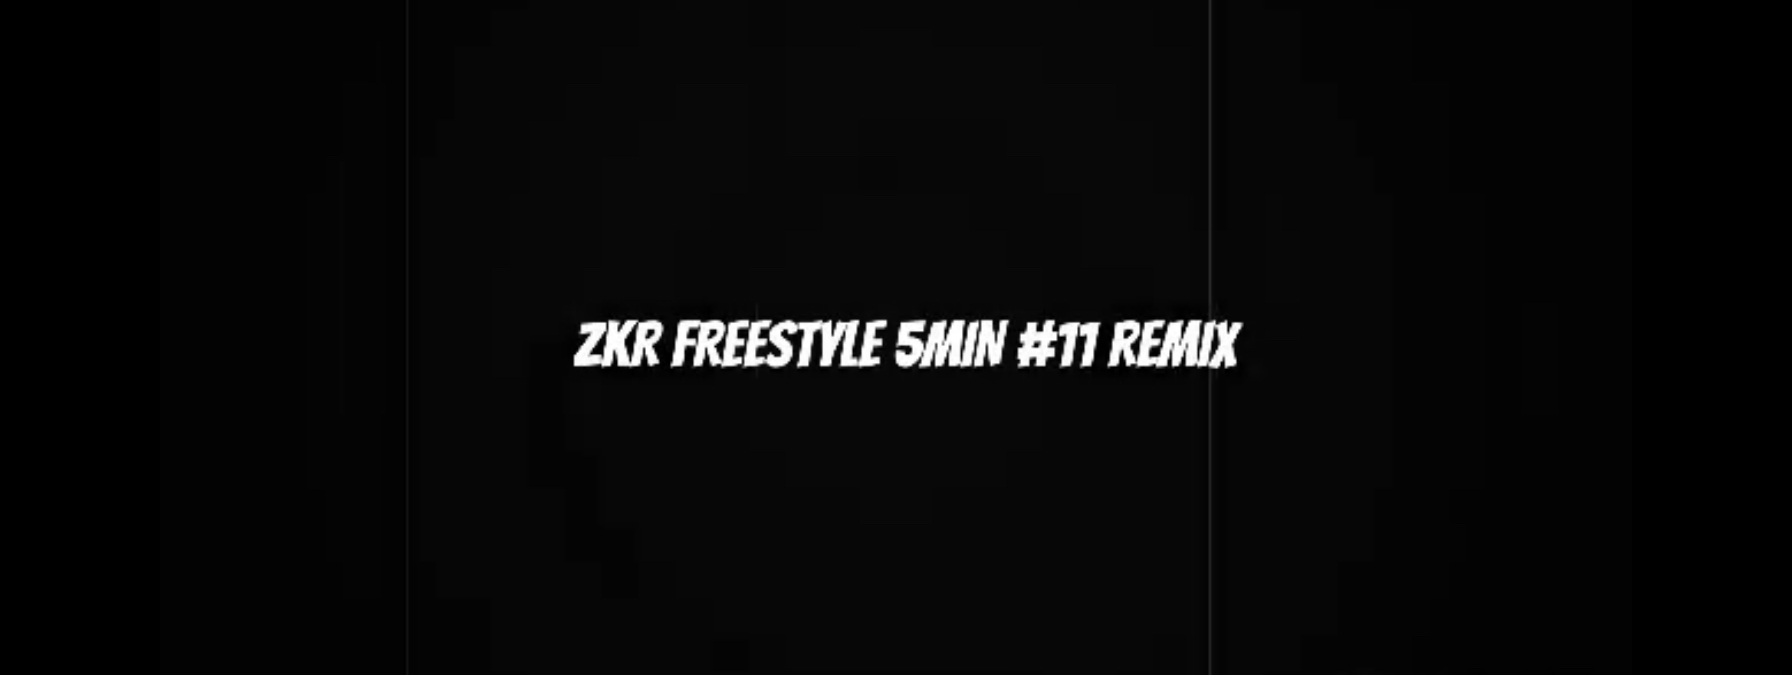 Zifa - Freestyle Zkr 5min #11 - Remix